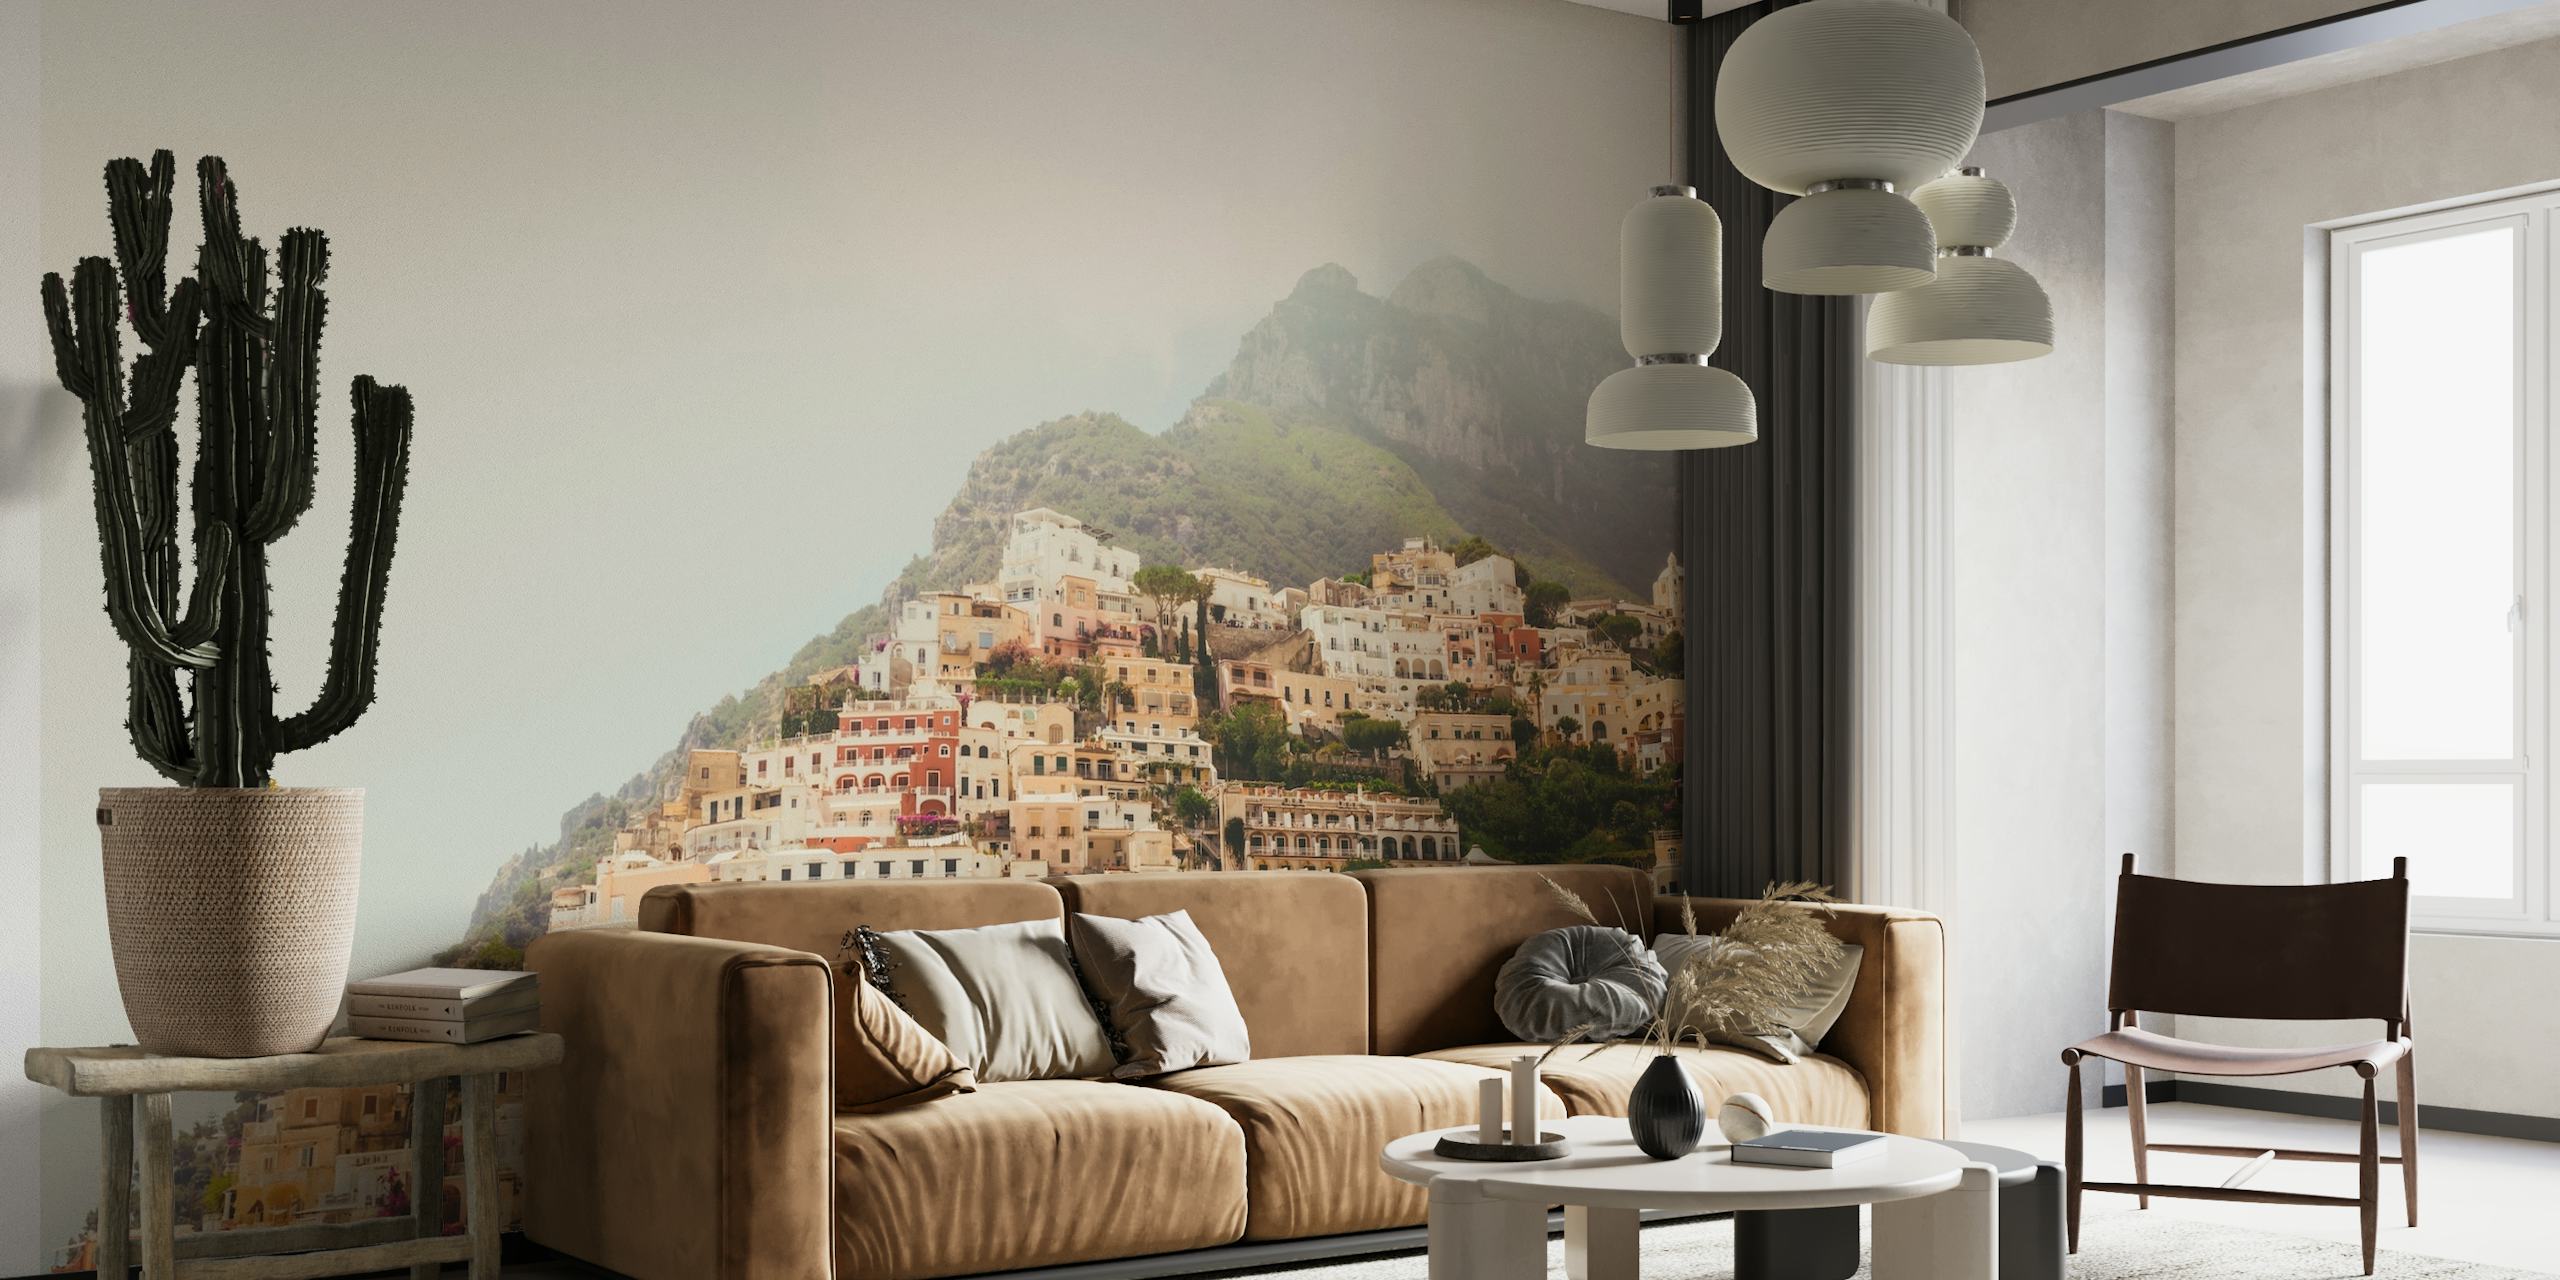 O mural da Costa Amalfitana com casas em tons pastéis nas falésias